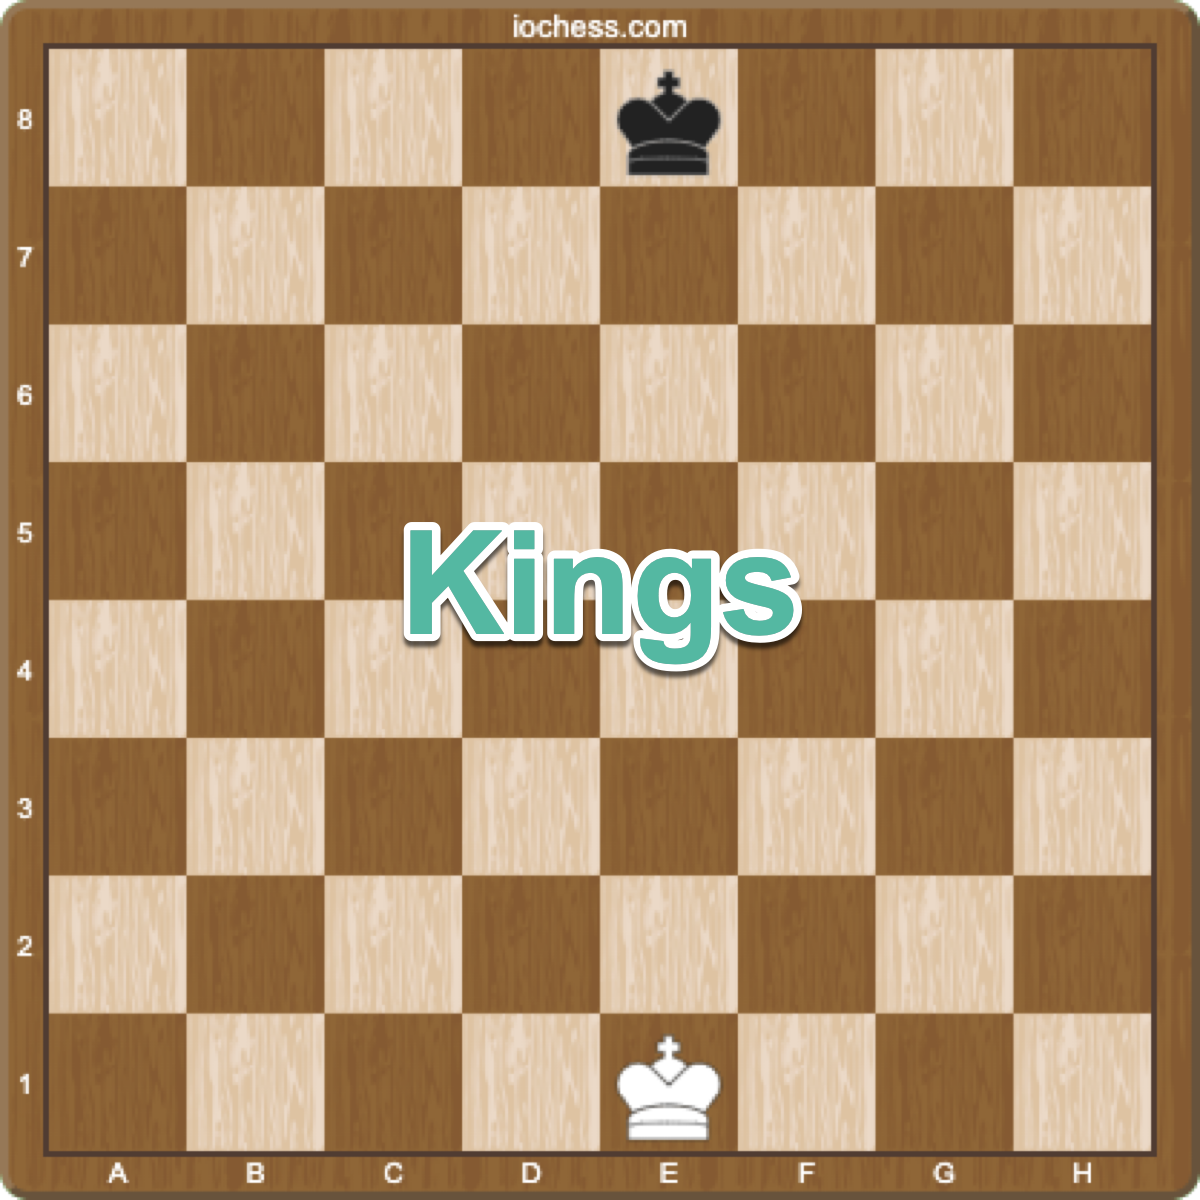 chess setup with king